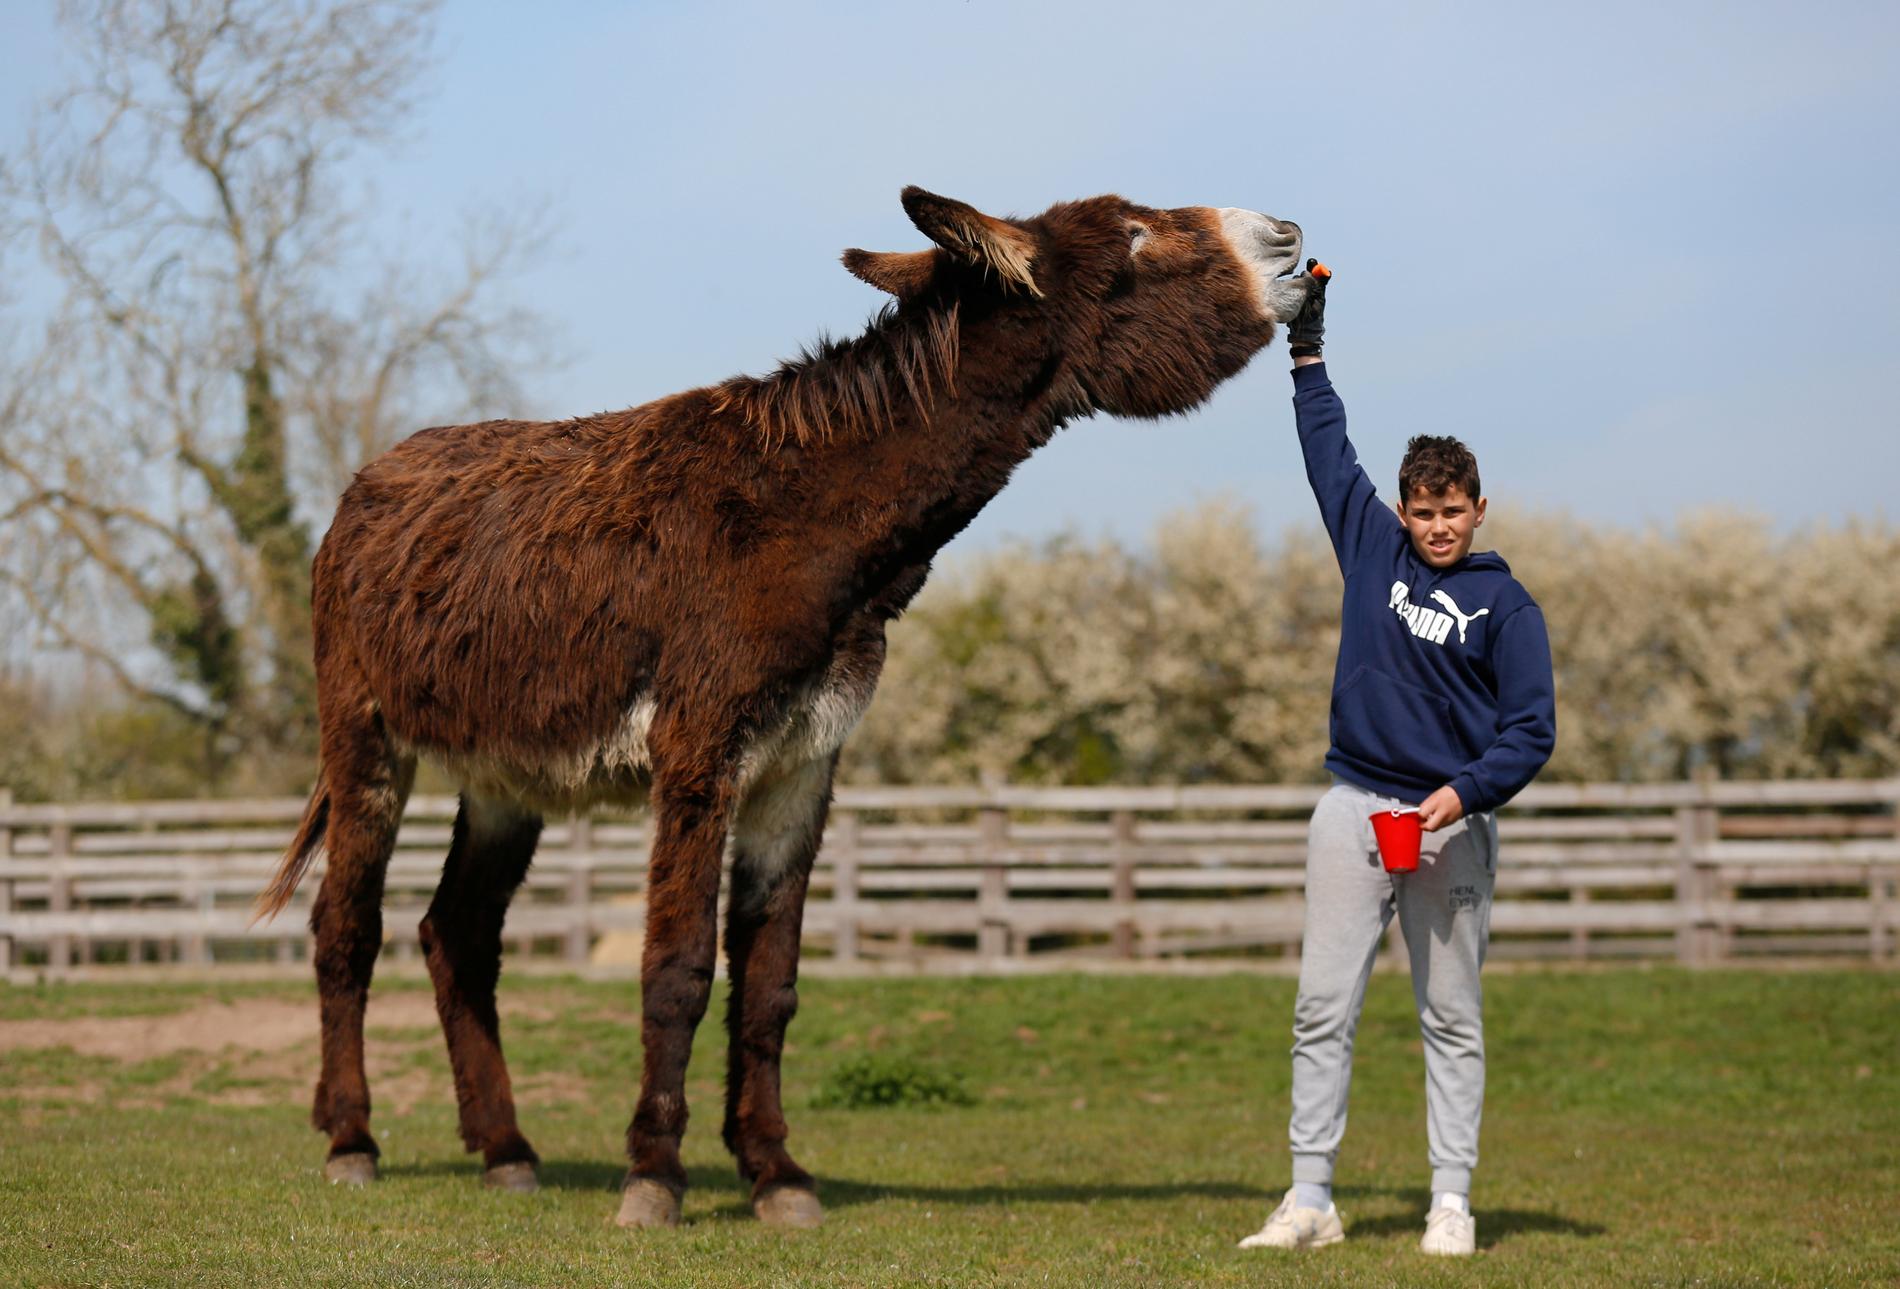 SNÄLL JÄTTE Derrick är Storbritanniens största åsna och bor på Radcliffe Donkey Sanctuary. Han beskrivs som väldigt snäll och brukar kallas ”Gentle Giant”, den snälle jätten. 